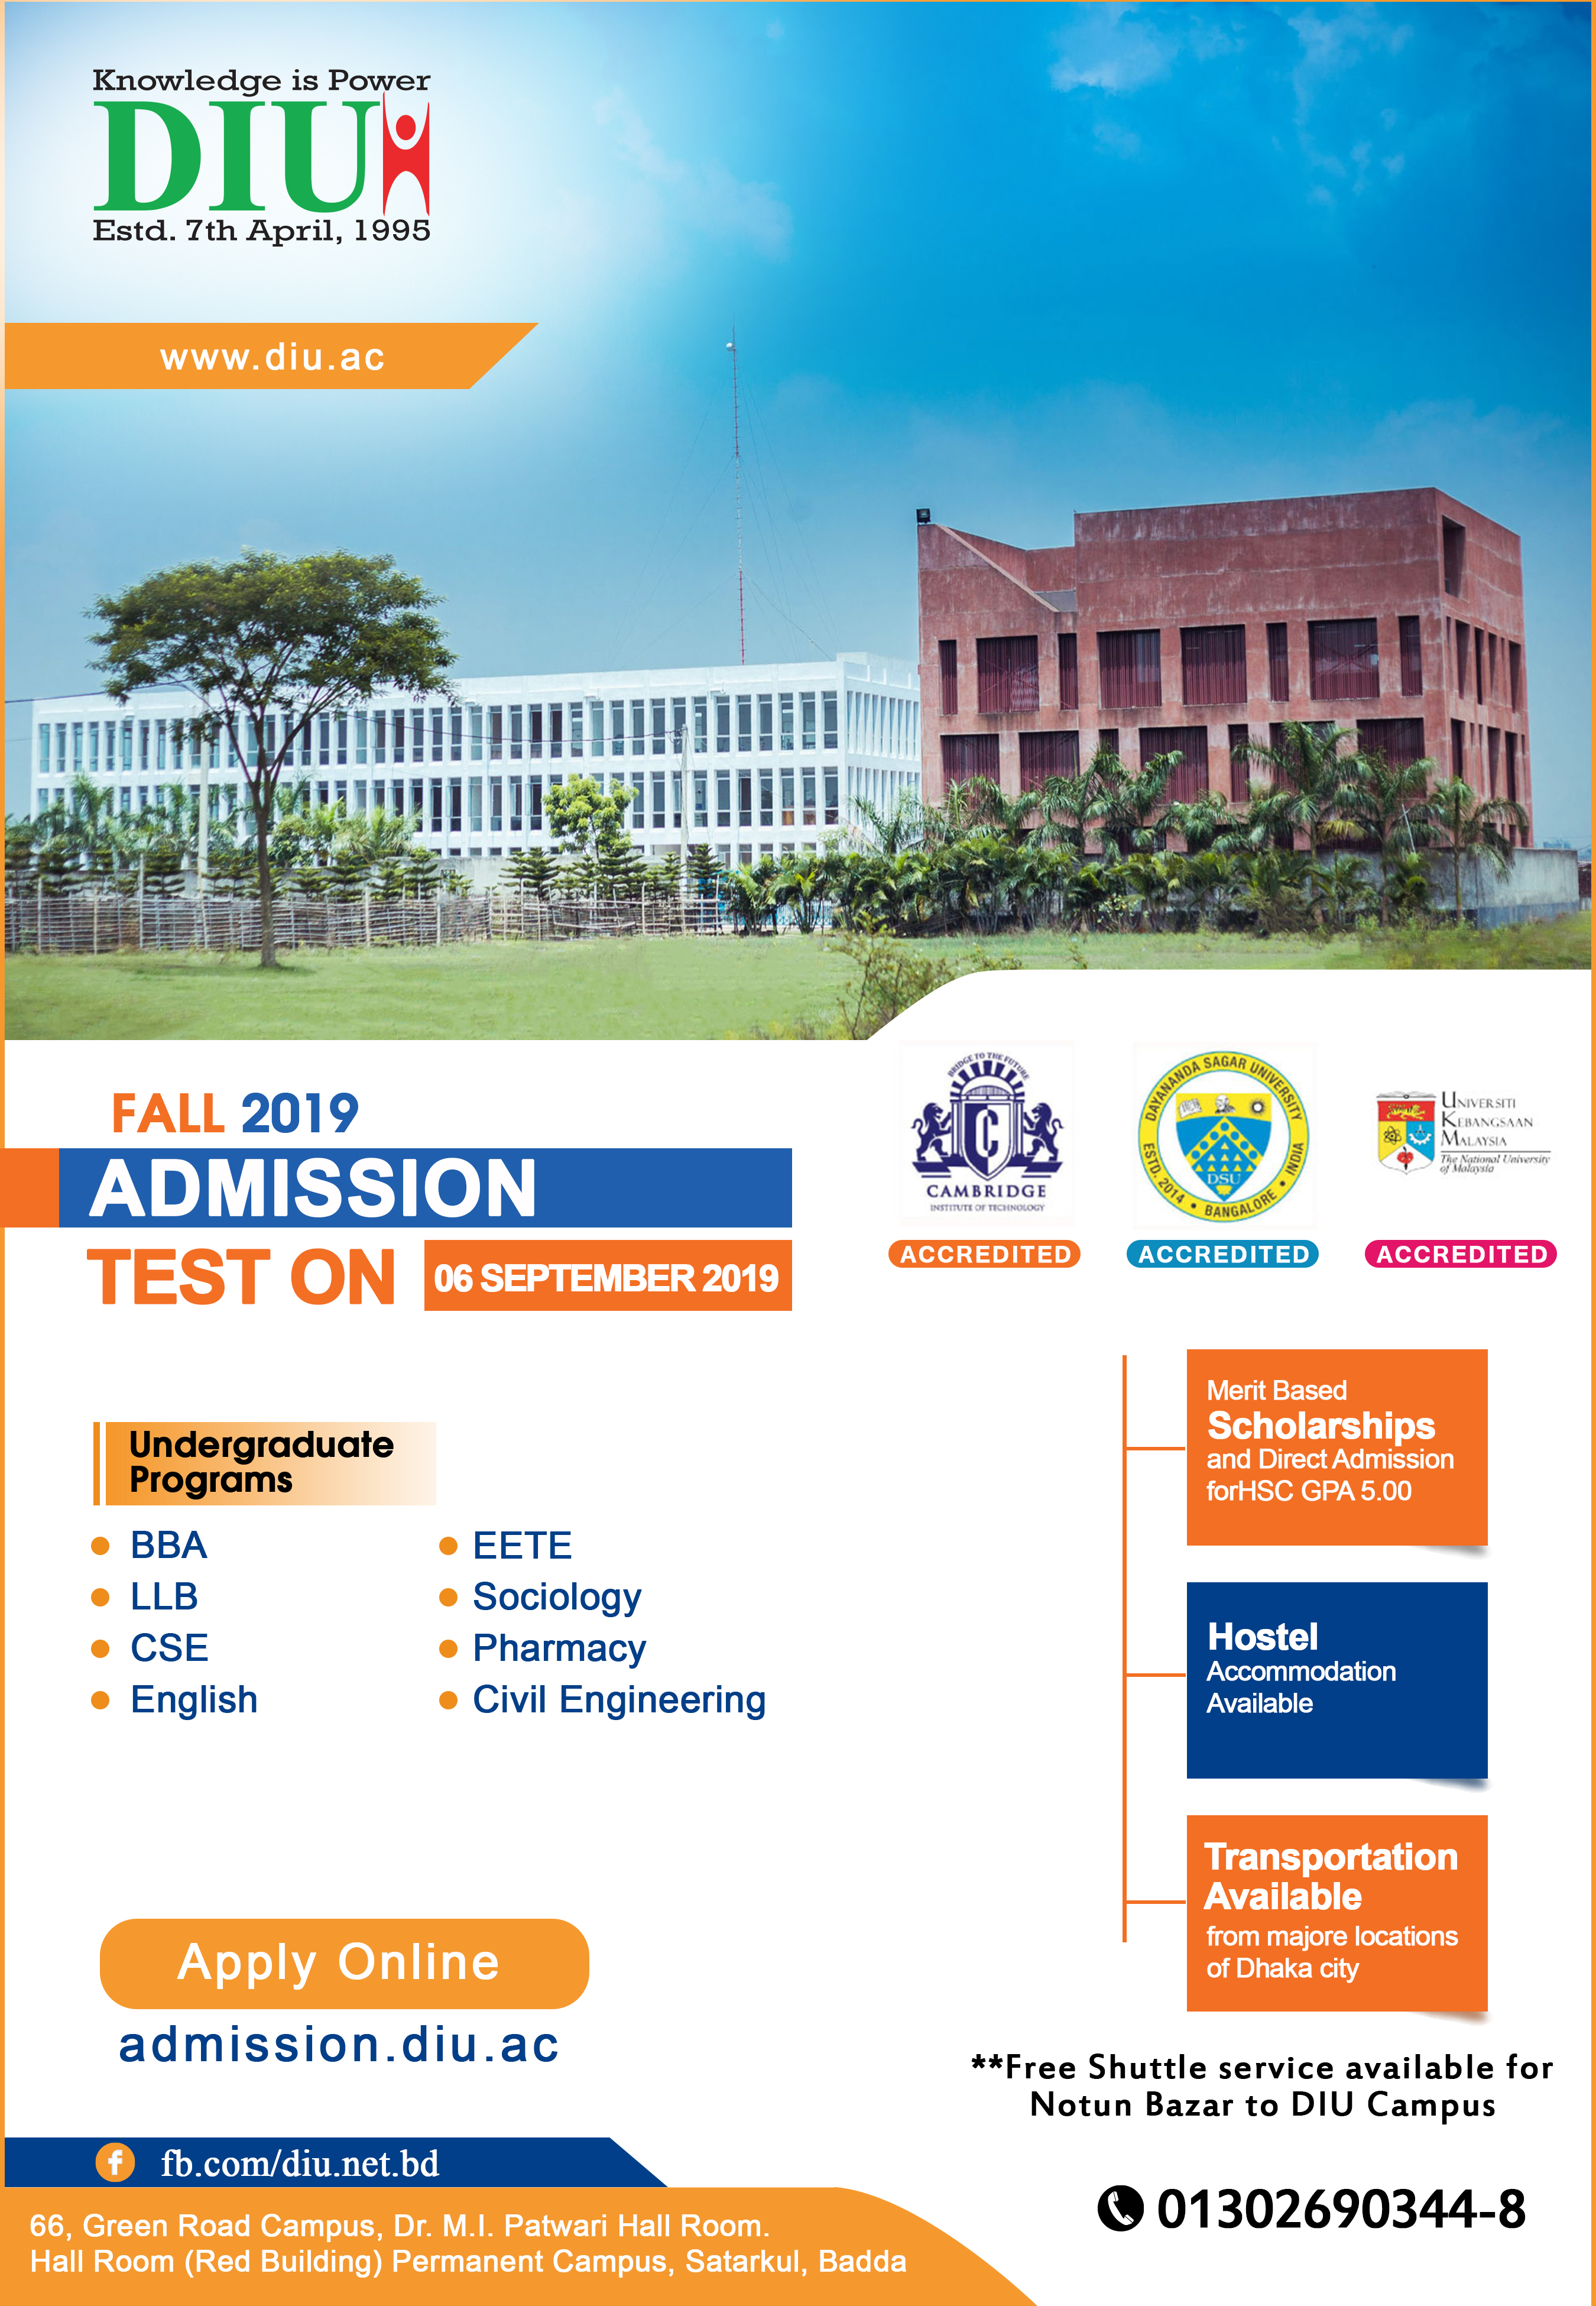 Admission Test: 06 September 2019